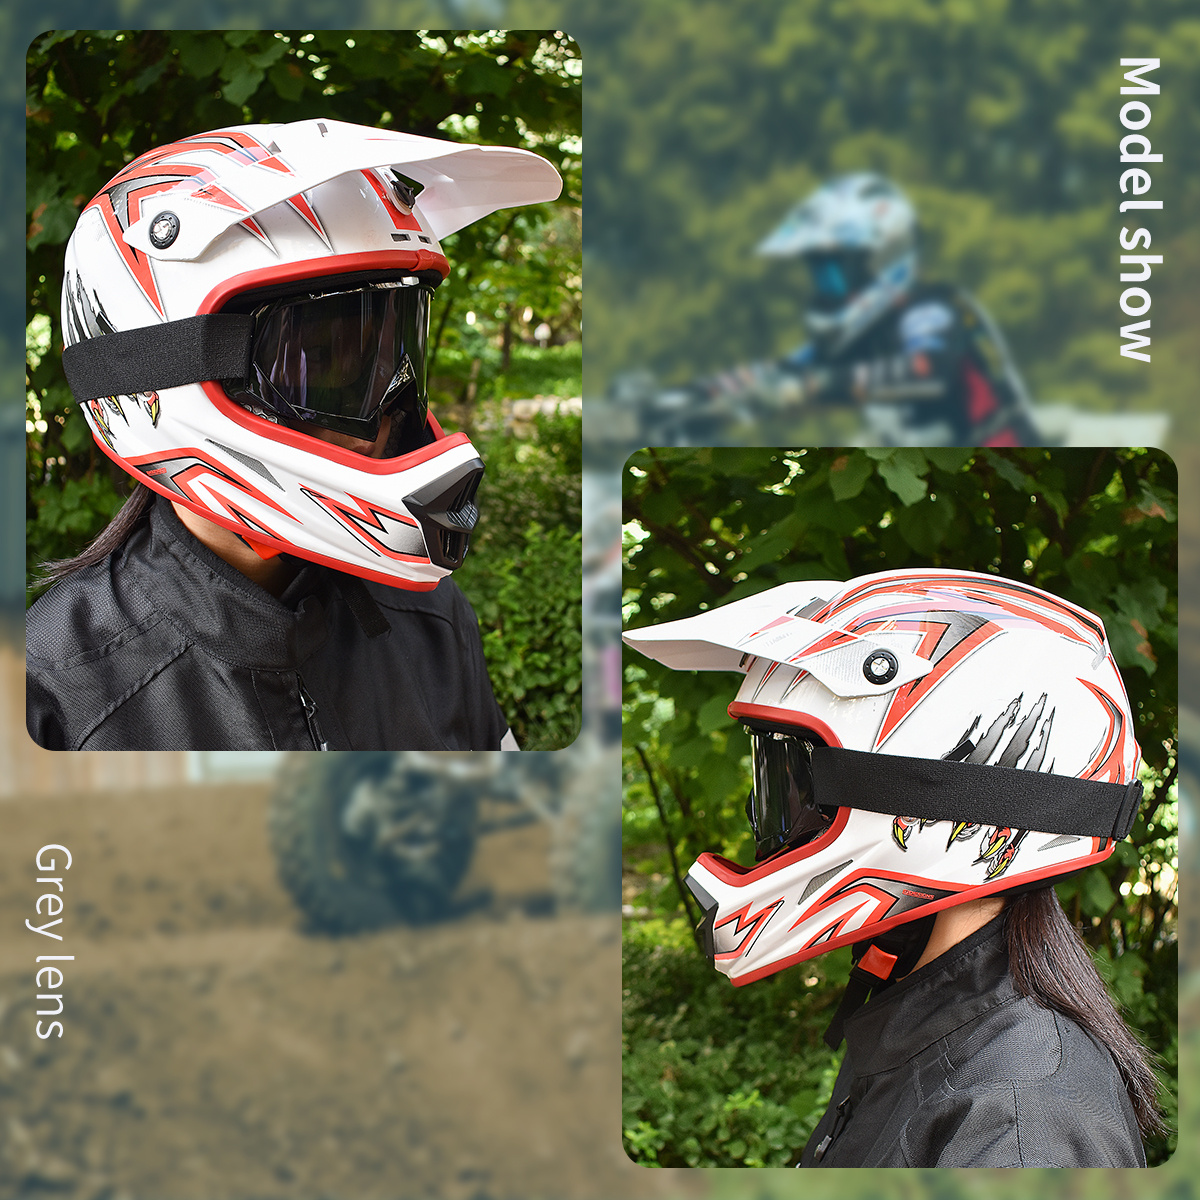 Descubre las Gafas de moto Enduro 101 ▷ BMW Motorrad